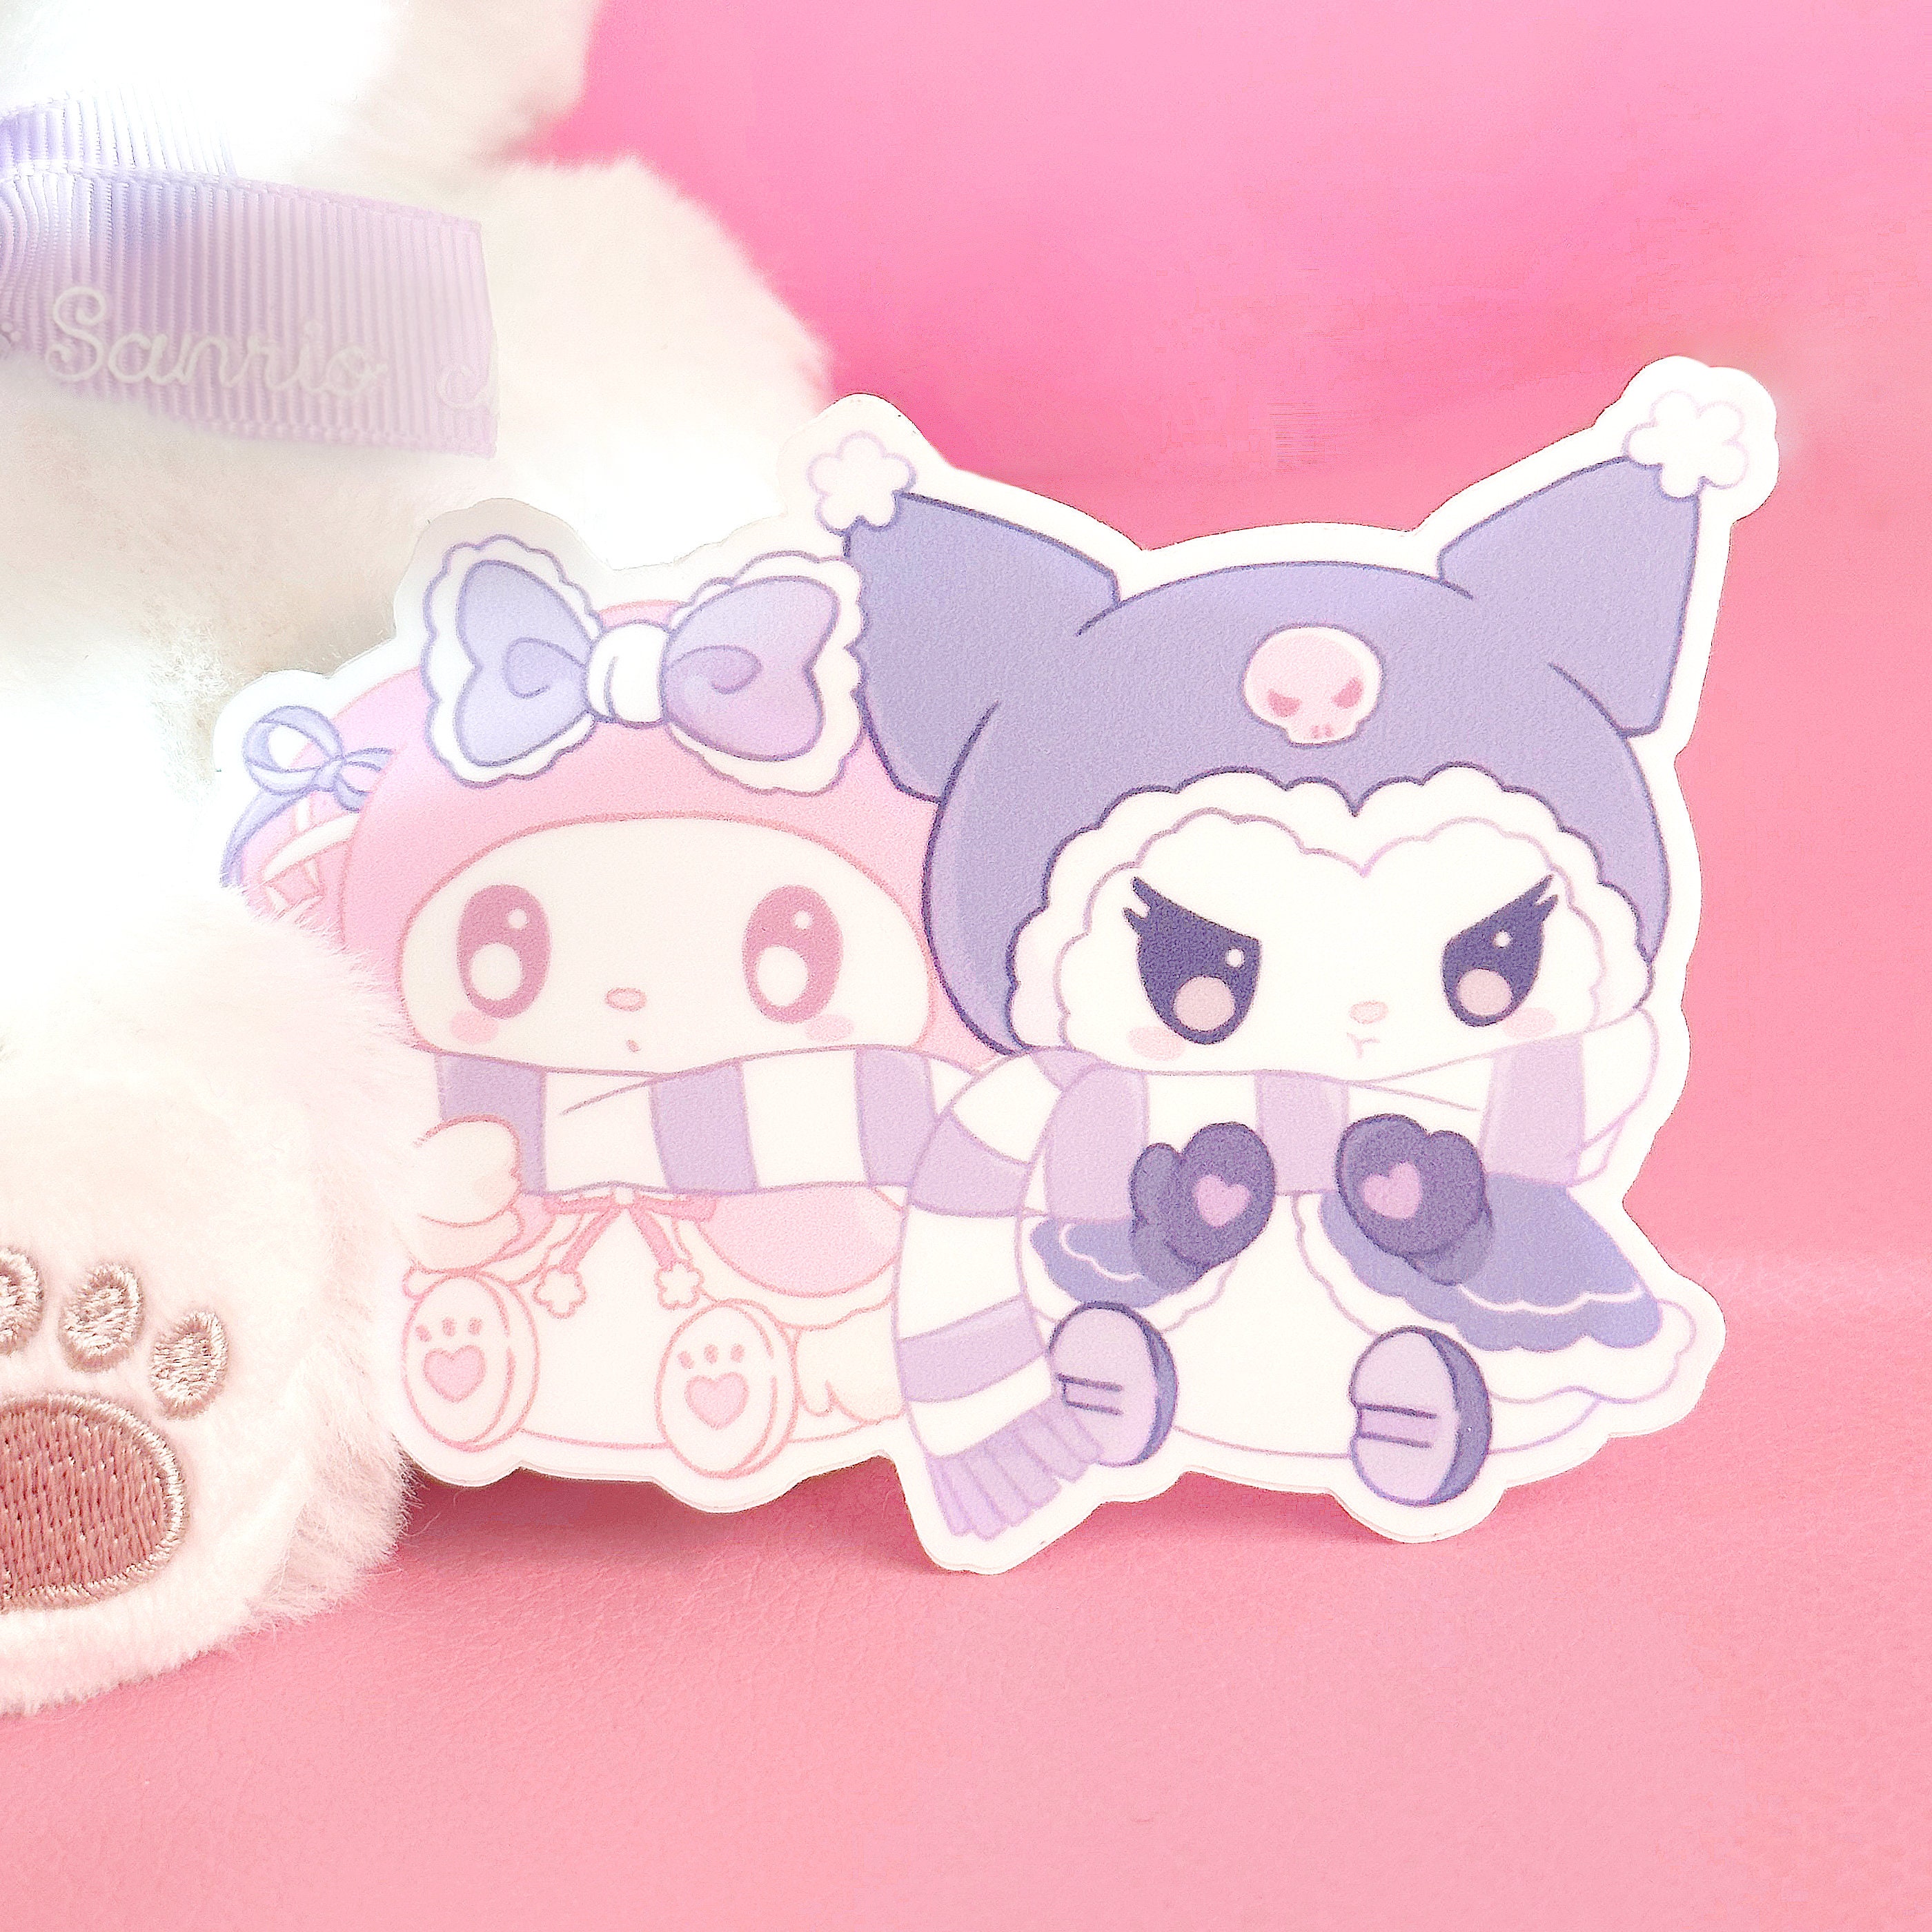 Kuromi My Melody Sticker Sanrio Winter Wonderland Vinyl Gothic Pastel Pink  Purple Candy Lolita Besties Decal Stickers 